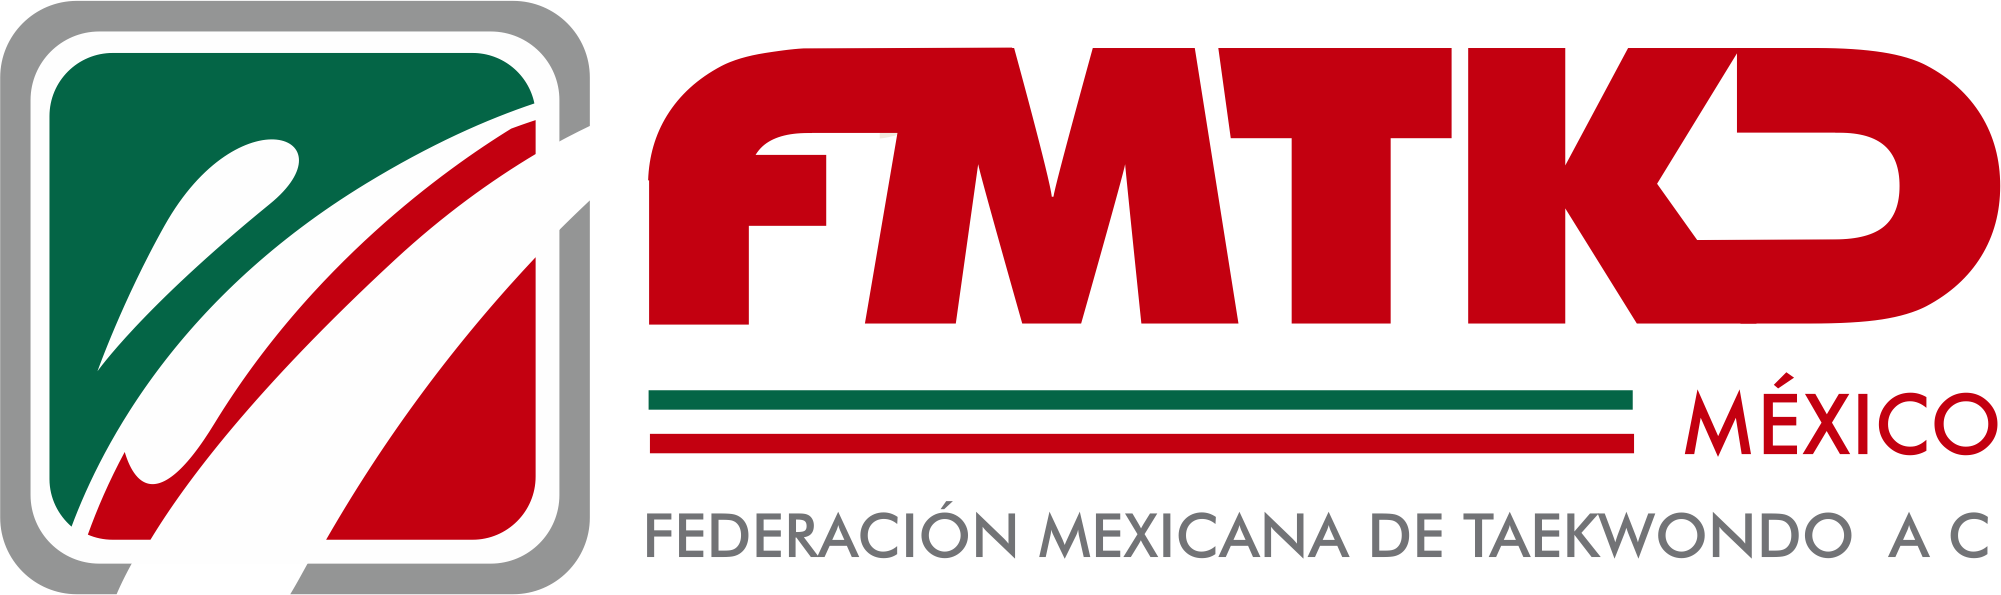 Federación Mexicana de Taekwondo, A.C.